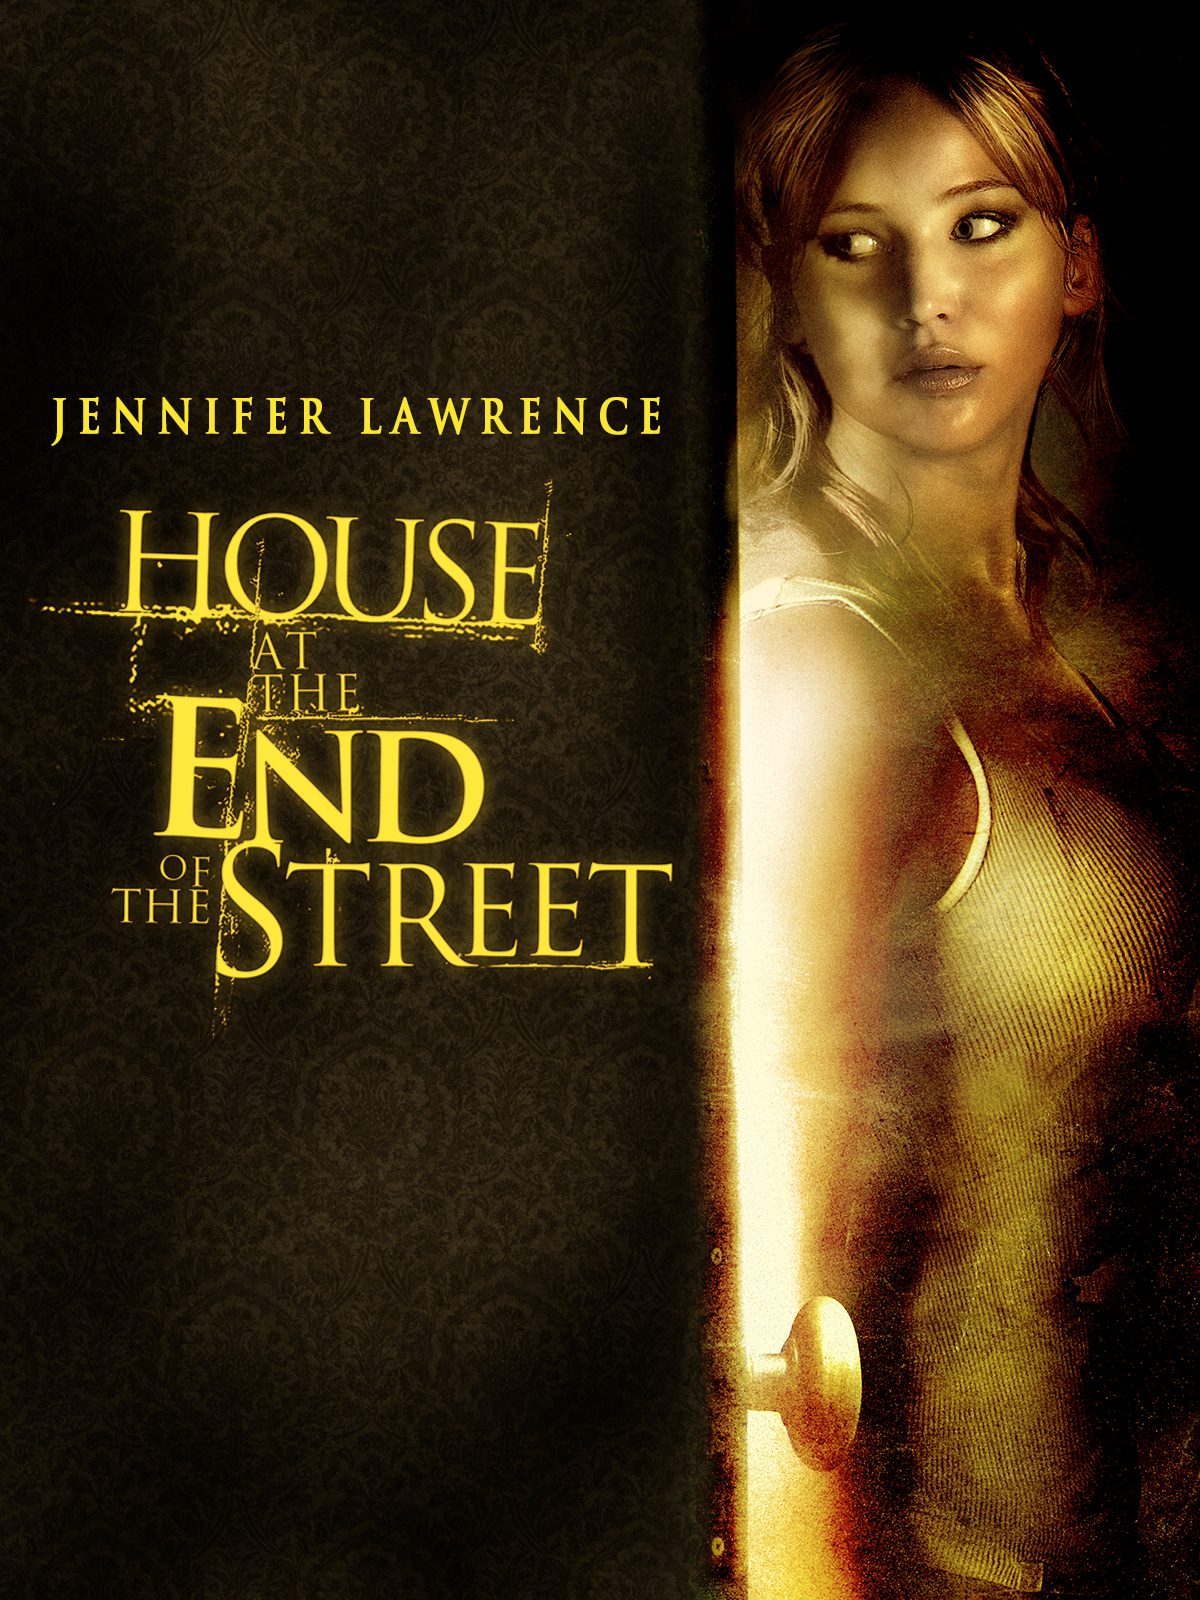 ดูหนังออนไลน์ฟรี House at the End of the Street บ้านช็อคสุดถนน